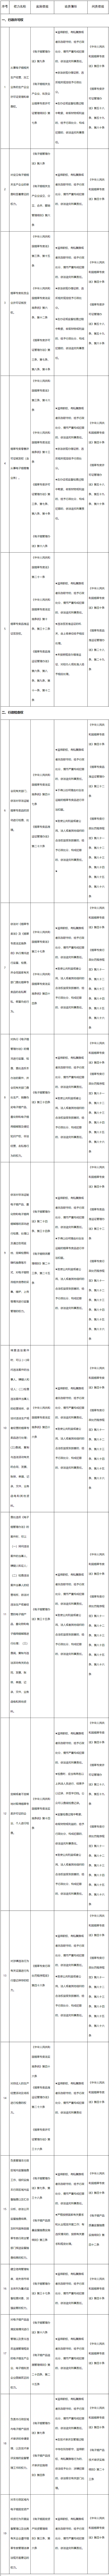 深圳市烟草专卖局发布权责清单：45项权力，12项提及电子烟插图